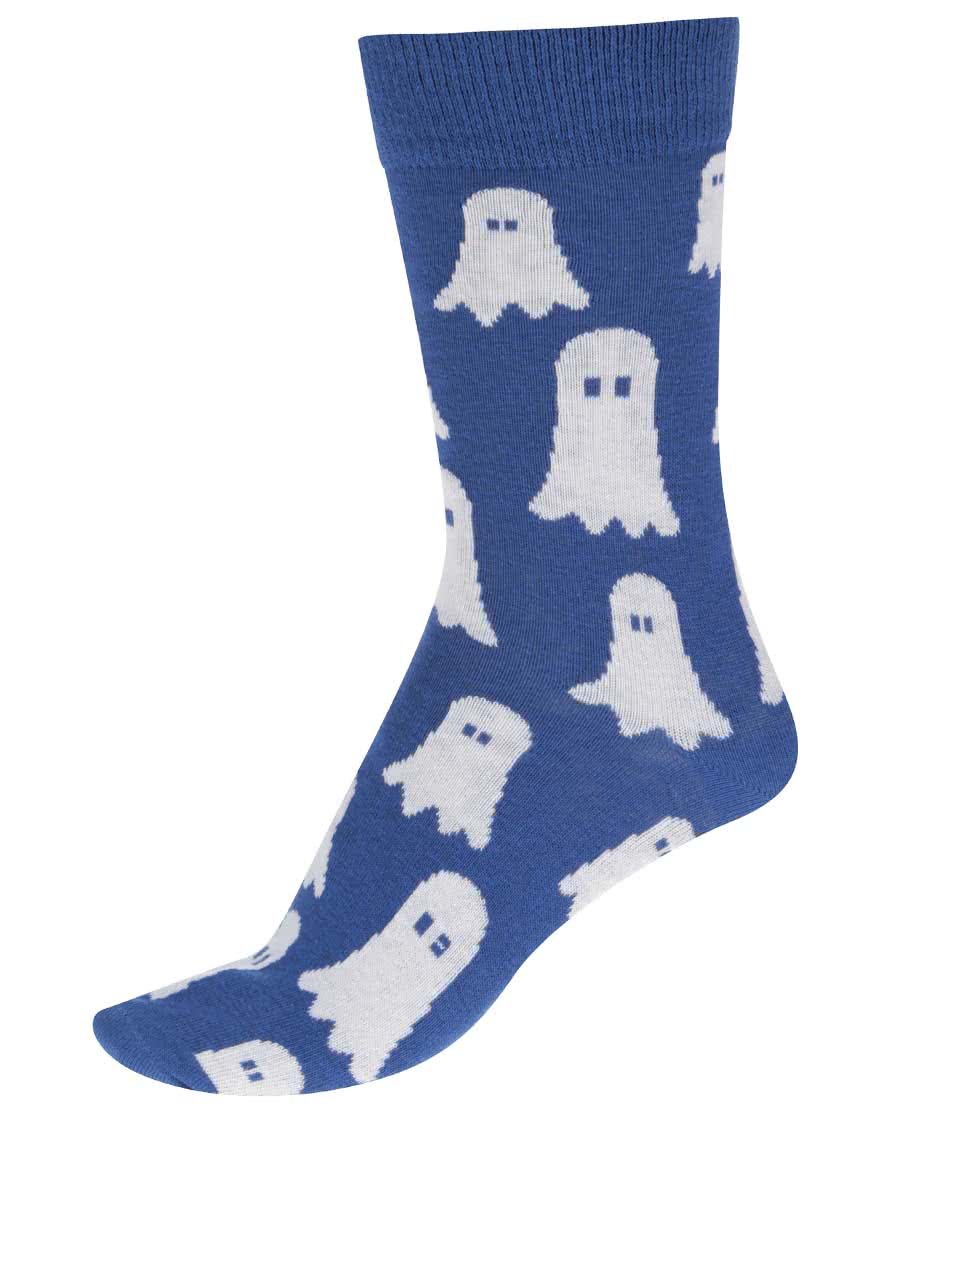 Modré unisex ponožky s bubáky ZOOT Originál